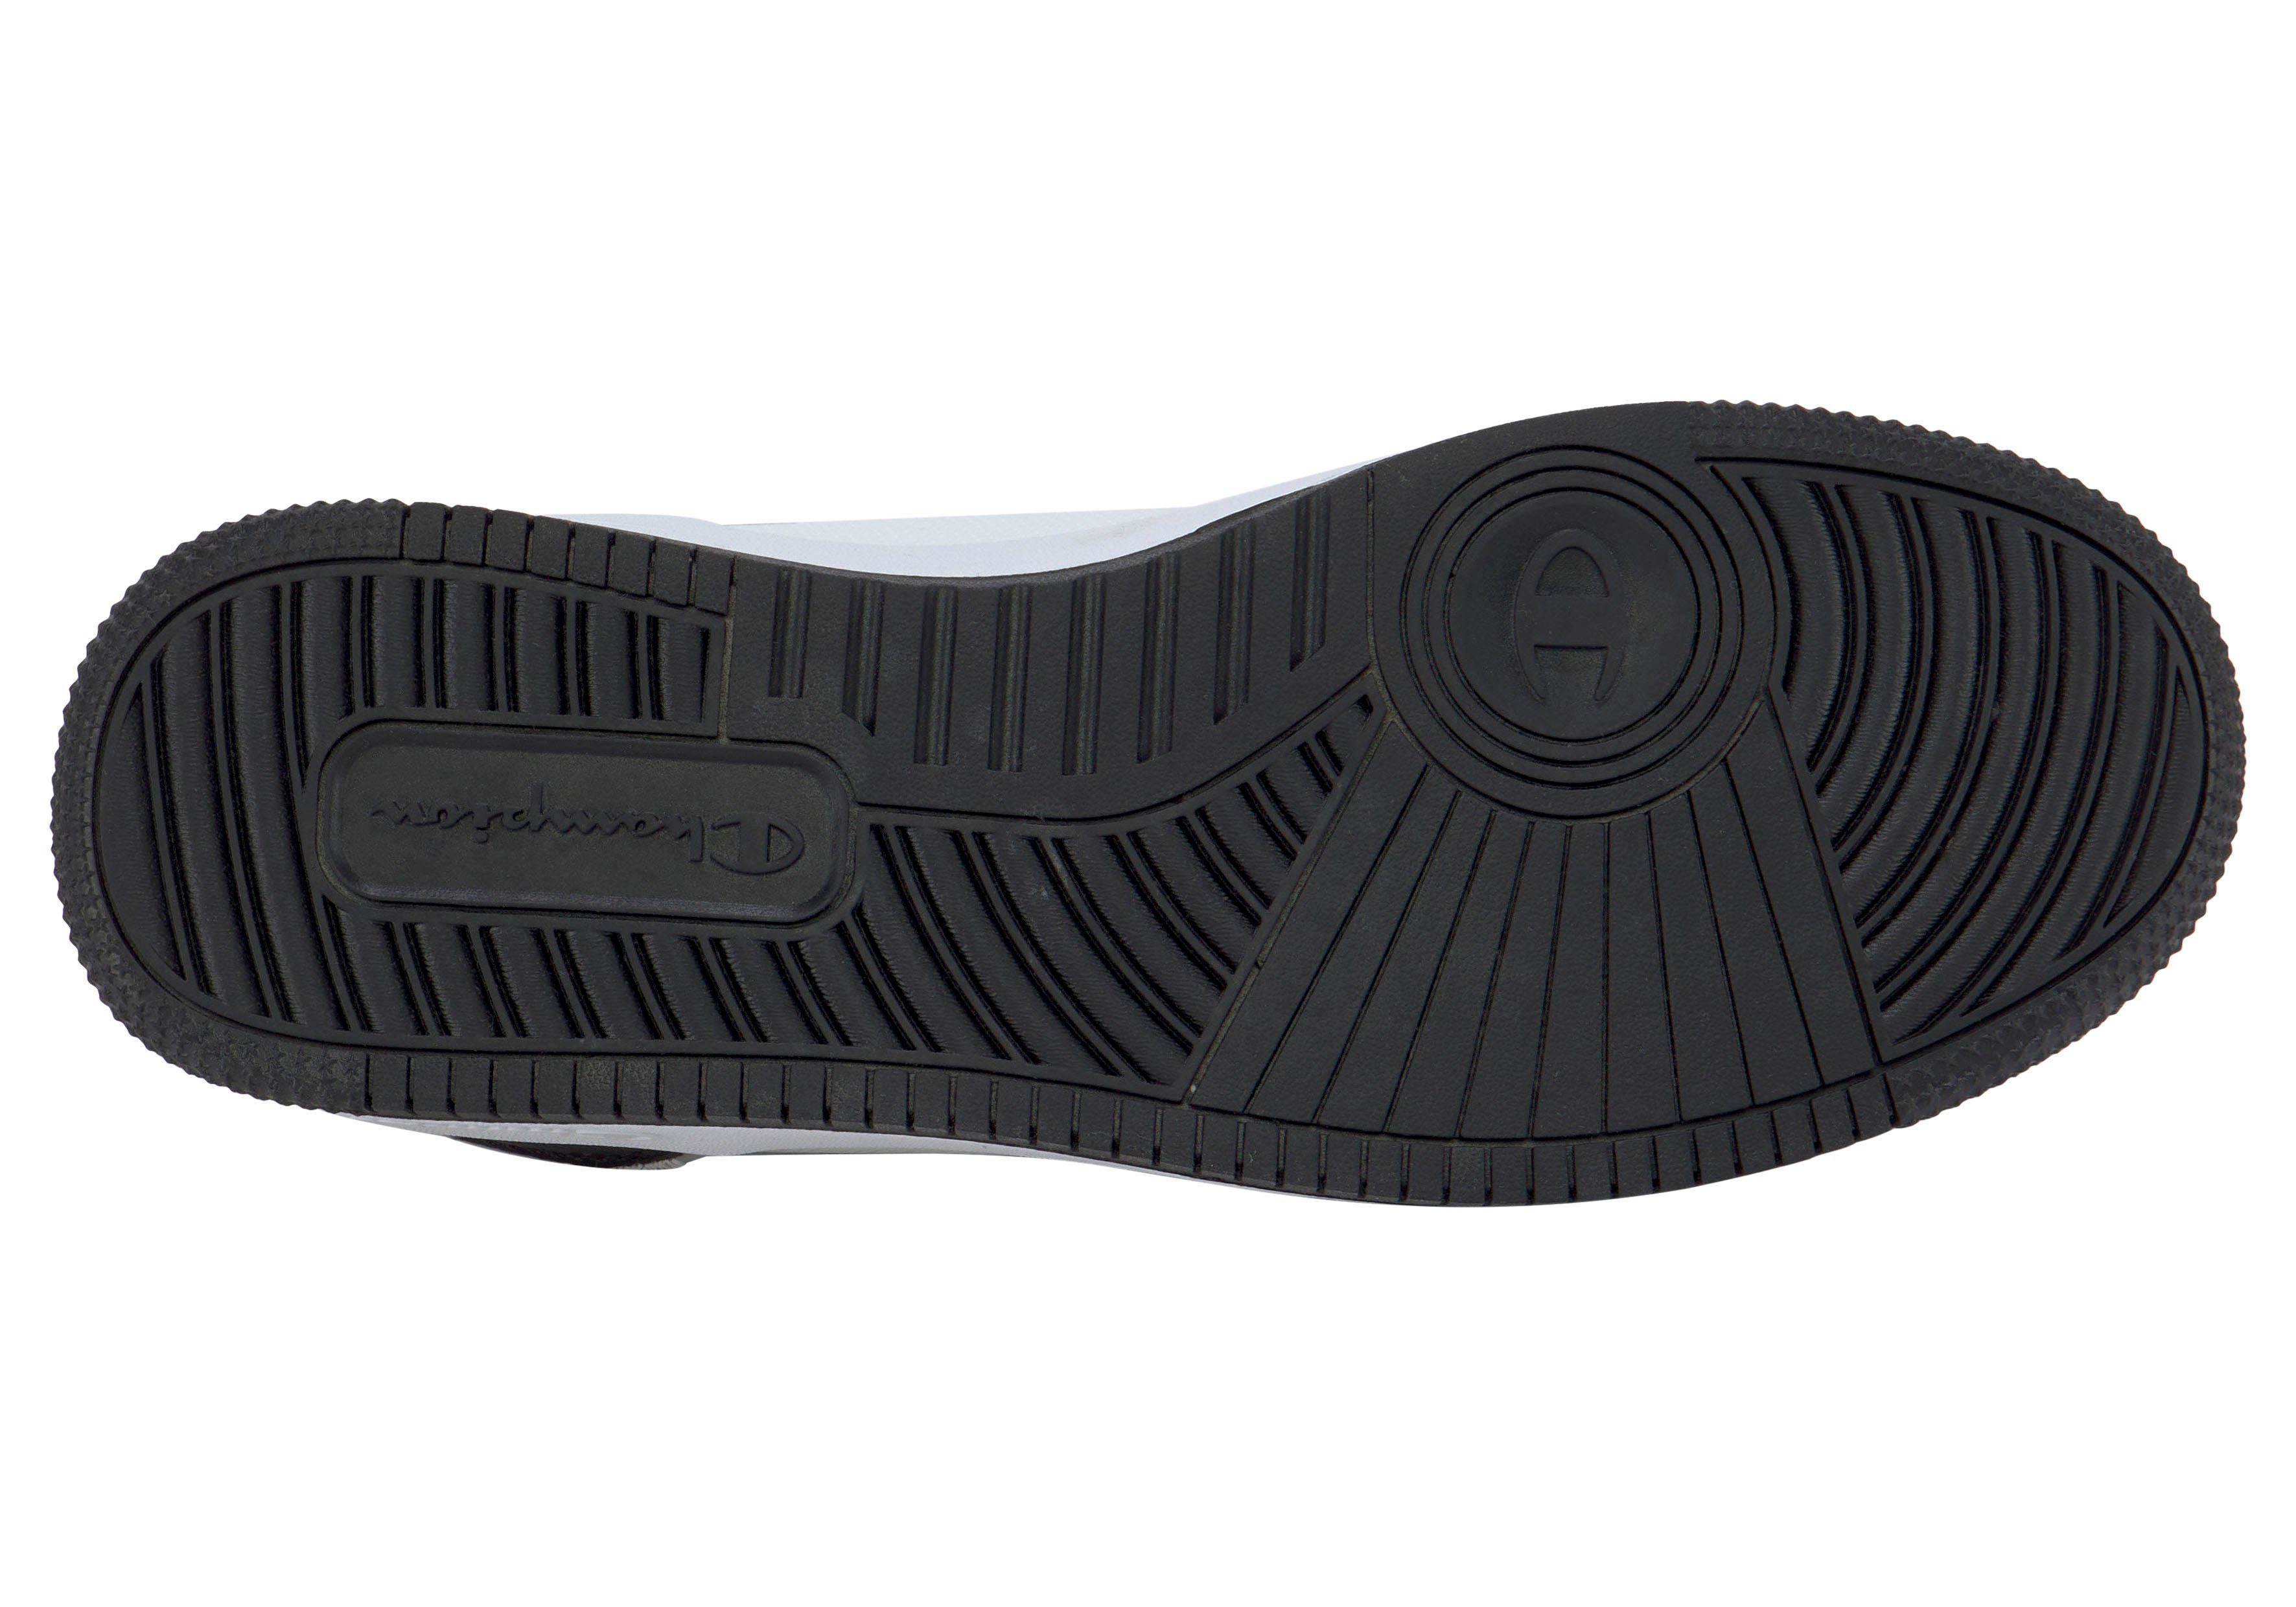 Champion REBOUND 2.0 LOW schwarz-weiß-grau Sneaker